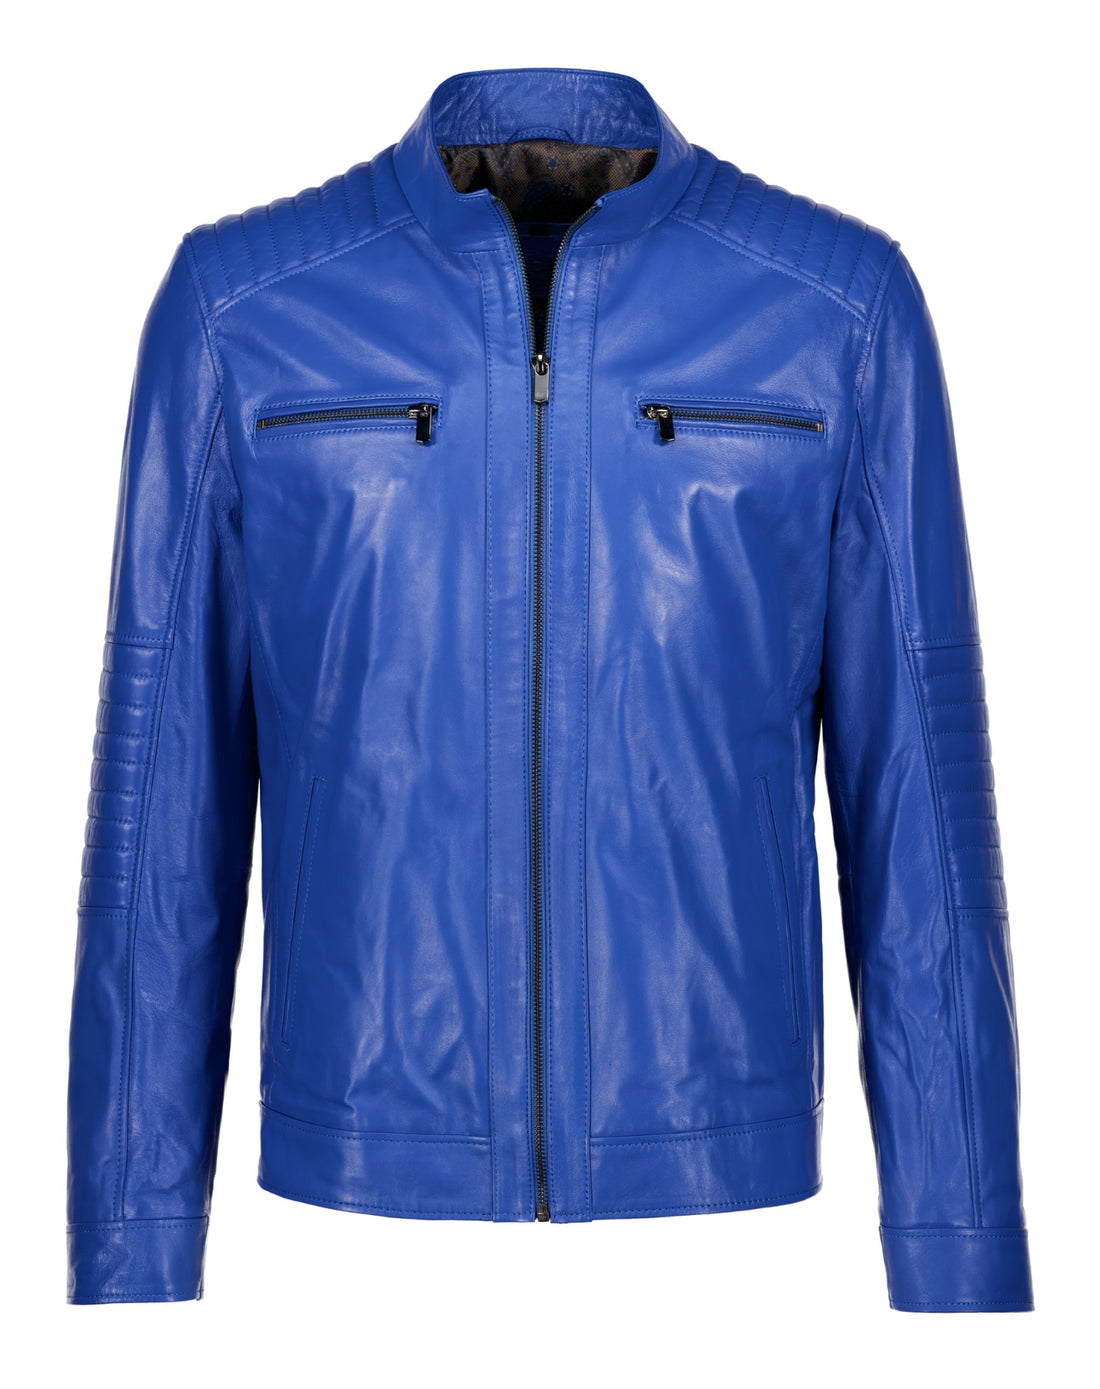 Lambskin Leather Jacket - Blue - Leather Jacket by Urbbana